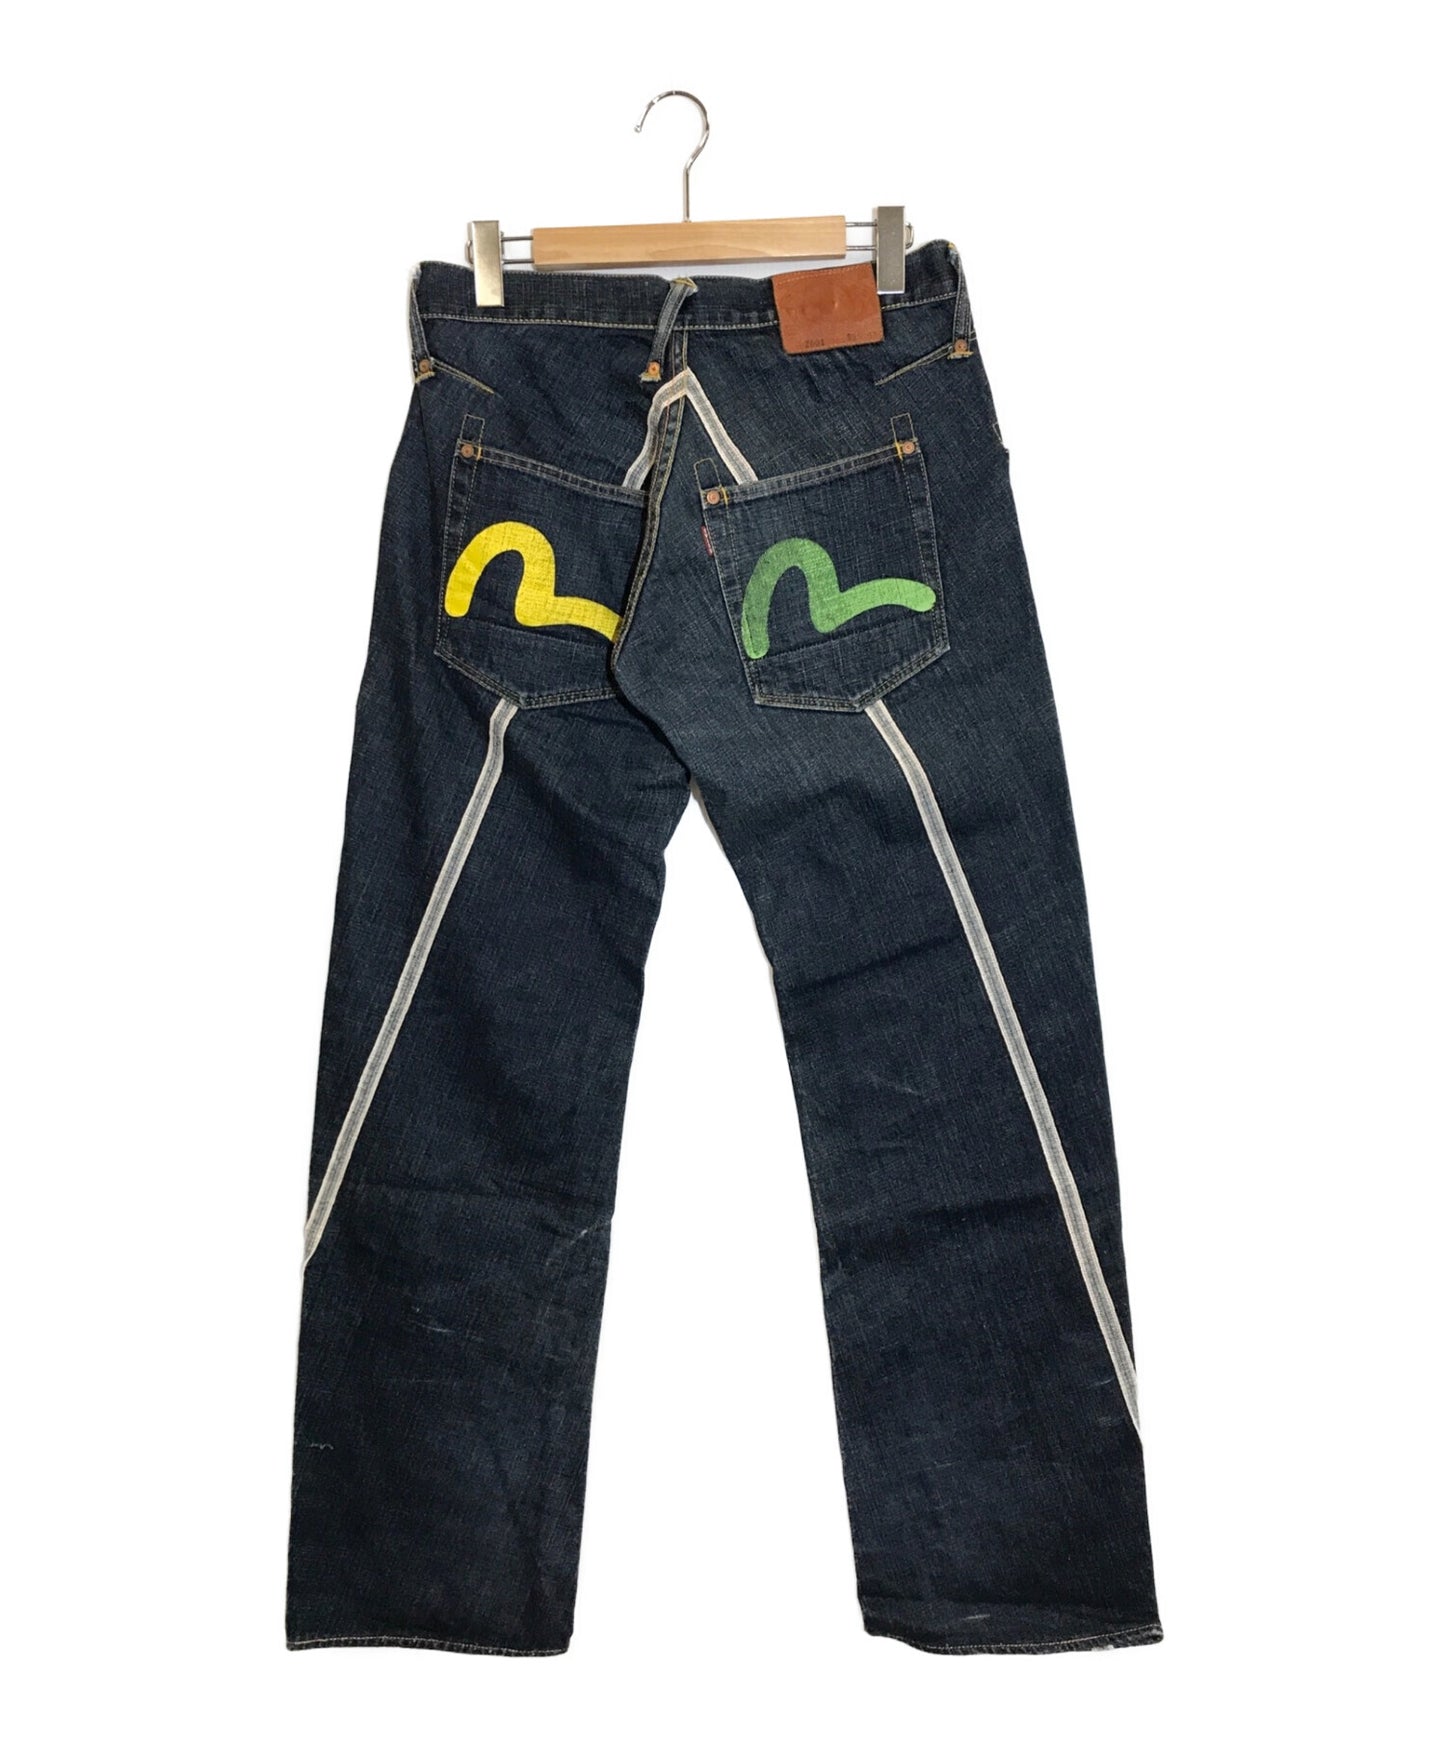 Evisu牛仔裤2001